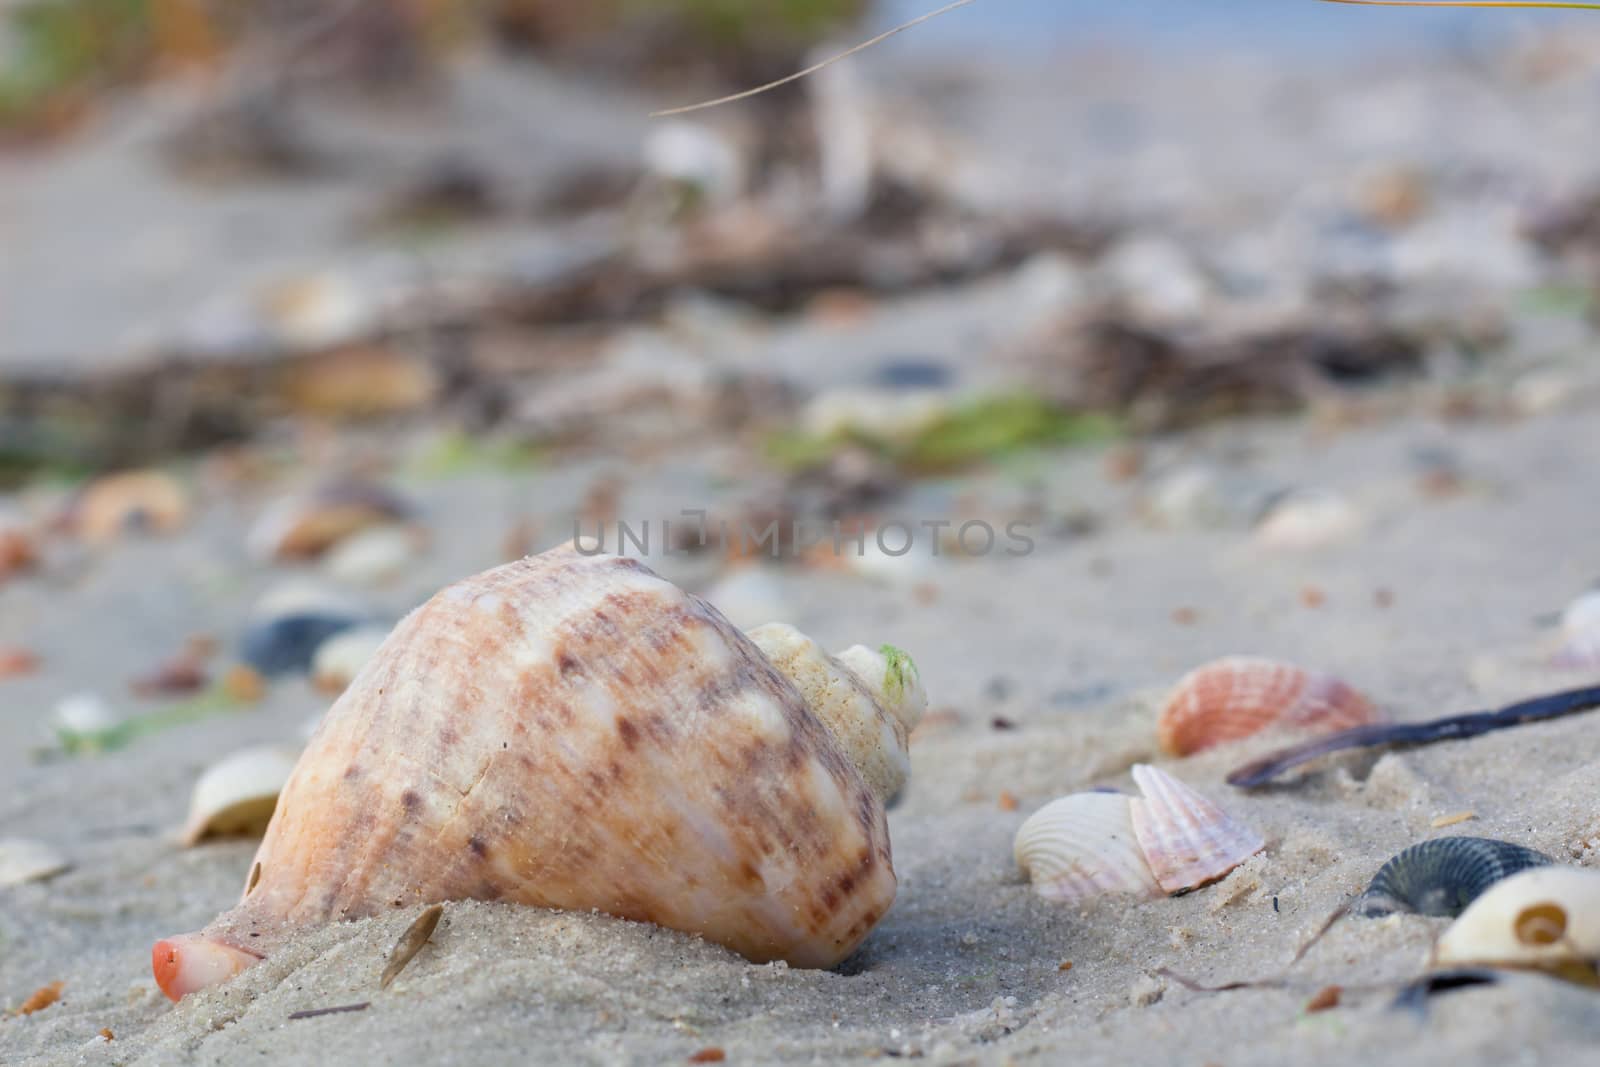 Seashells and clams on coastal sands, sandy beach seascape